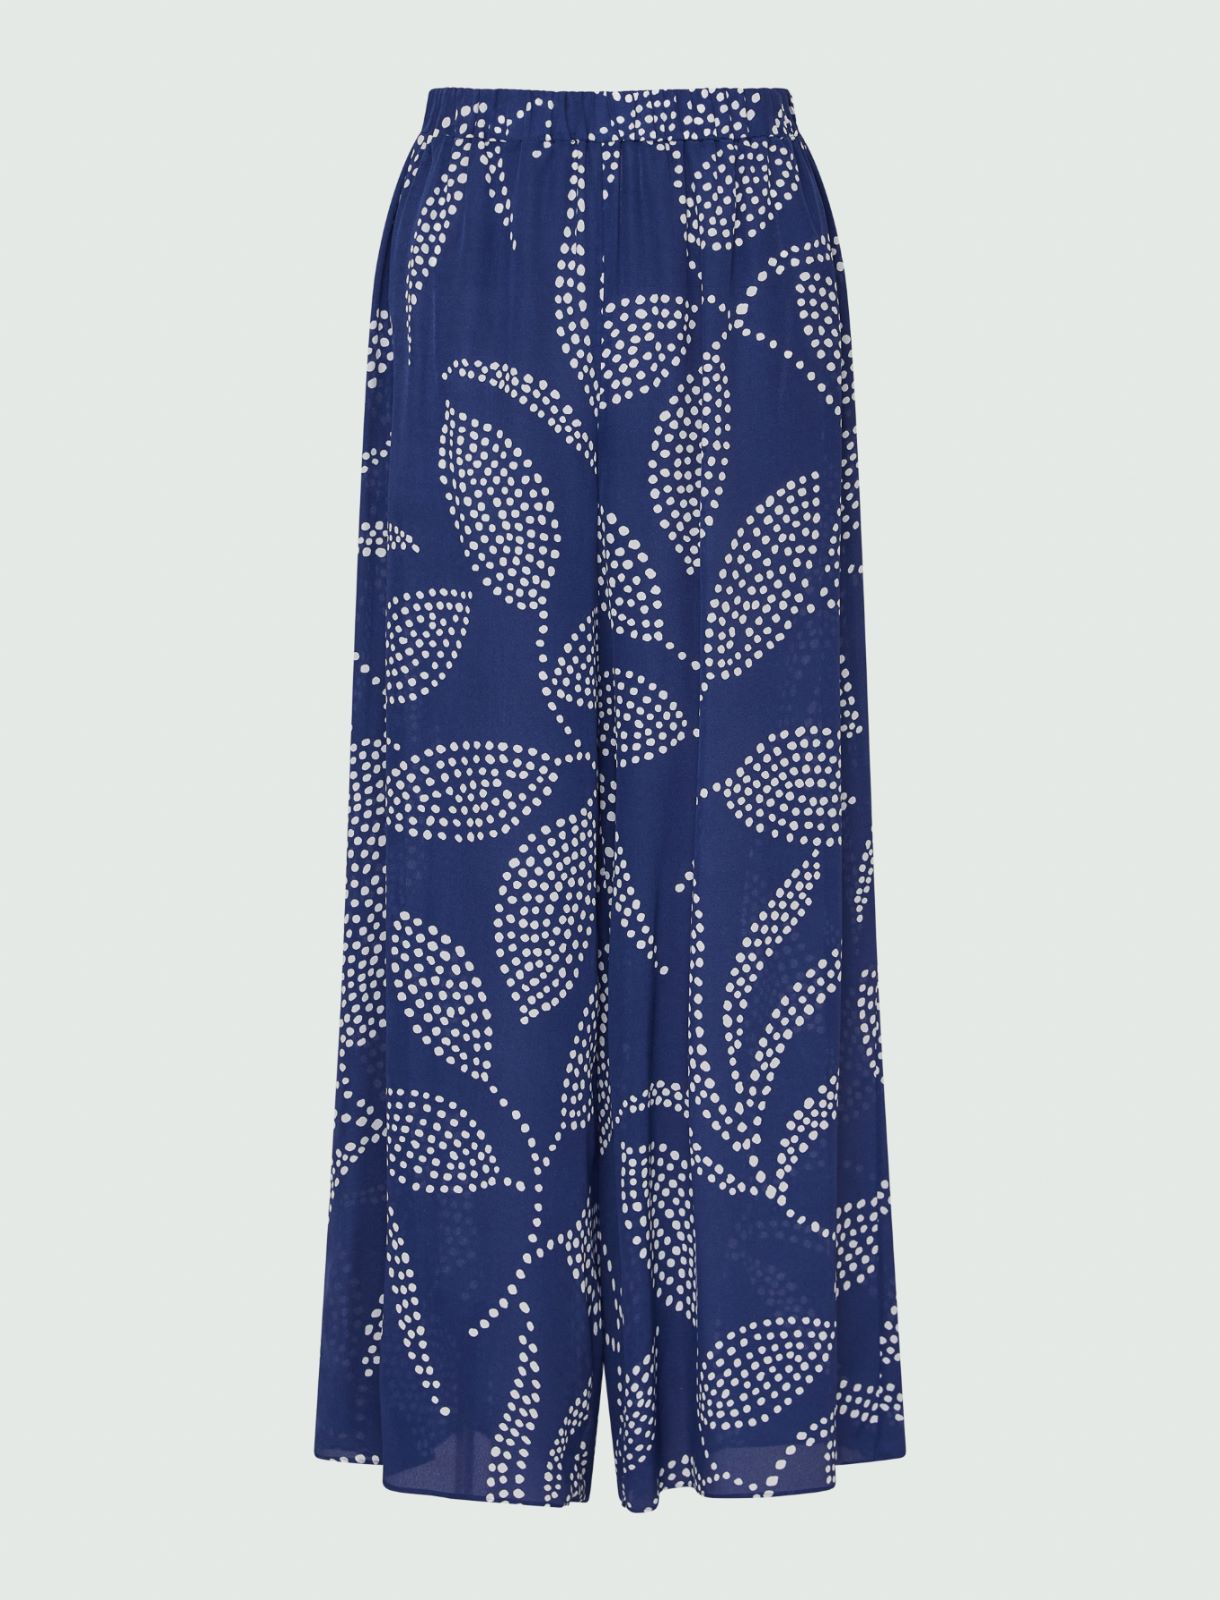 Pantalon en crêpe  - Bleuet - Marella